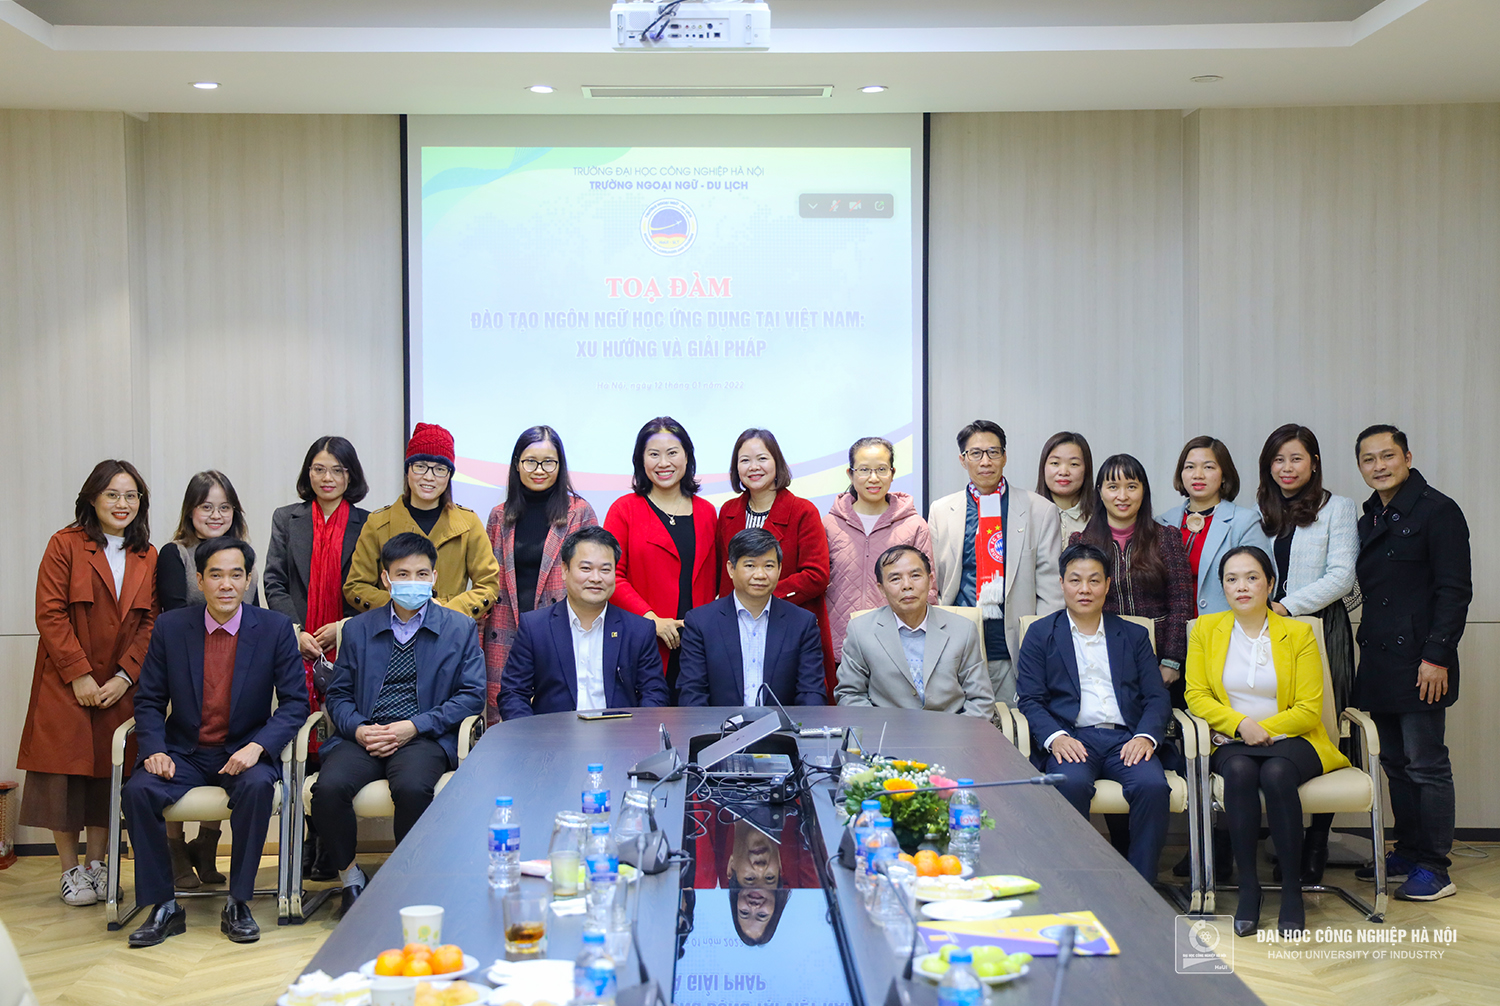 Đào tạo Ngôn ngữ học ứng dụng tại Việt Nam: Xu hướng và giải pháp